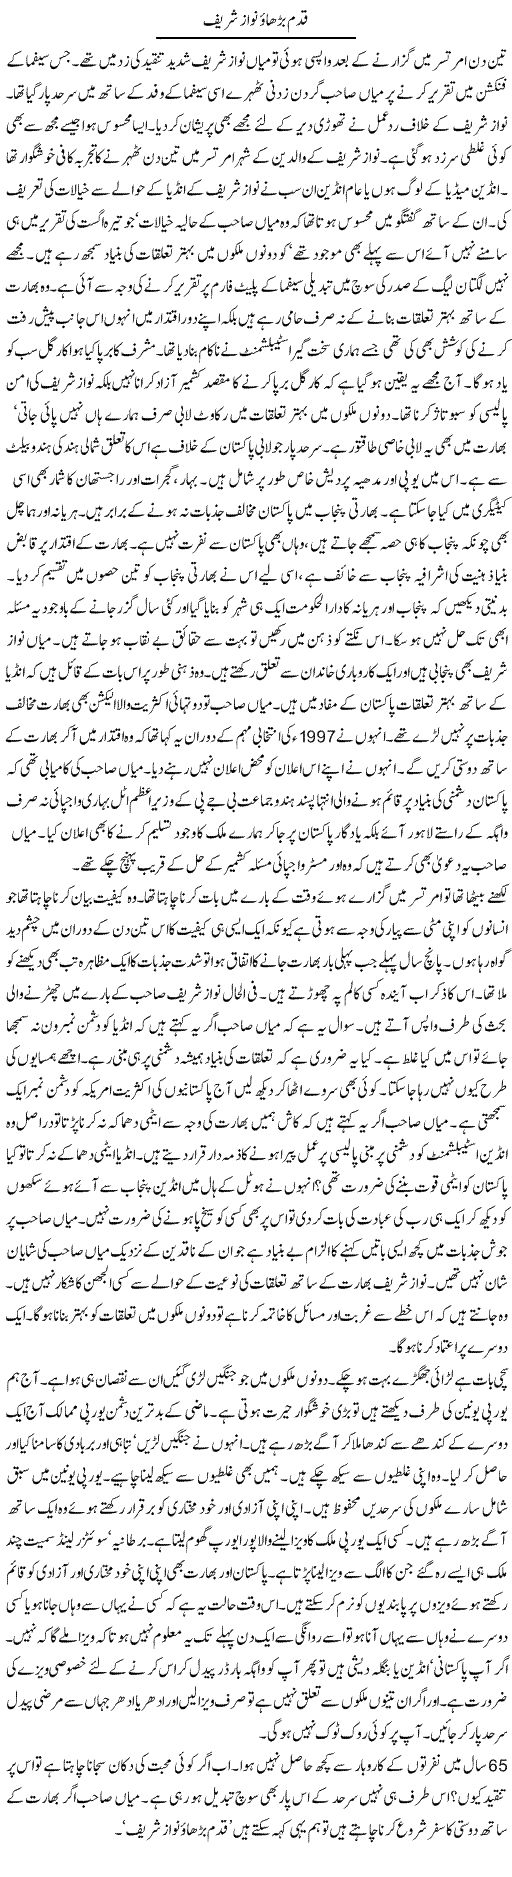 Nawaz Sharif Express Column Iyaz Khan 18 August 2011